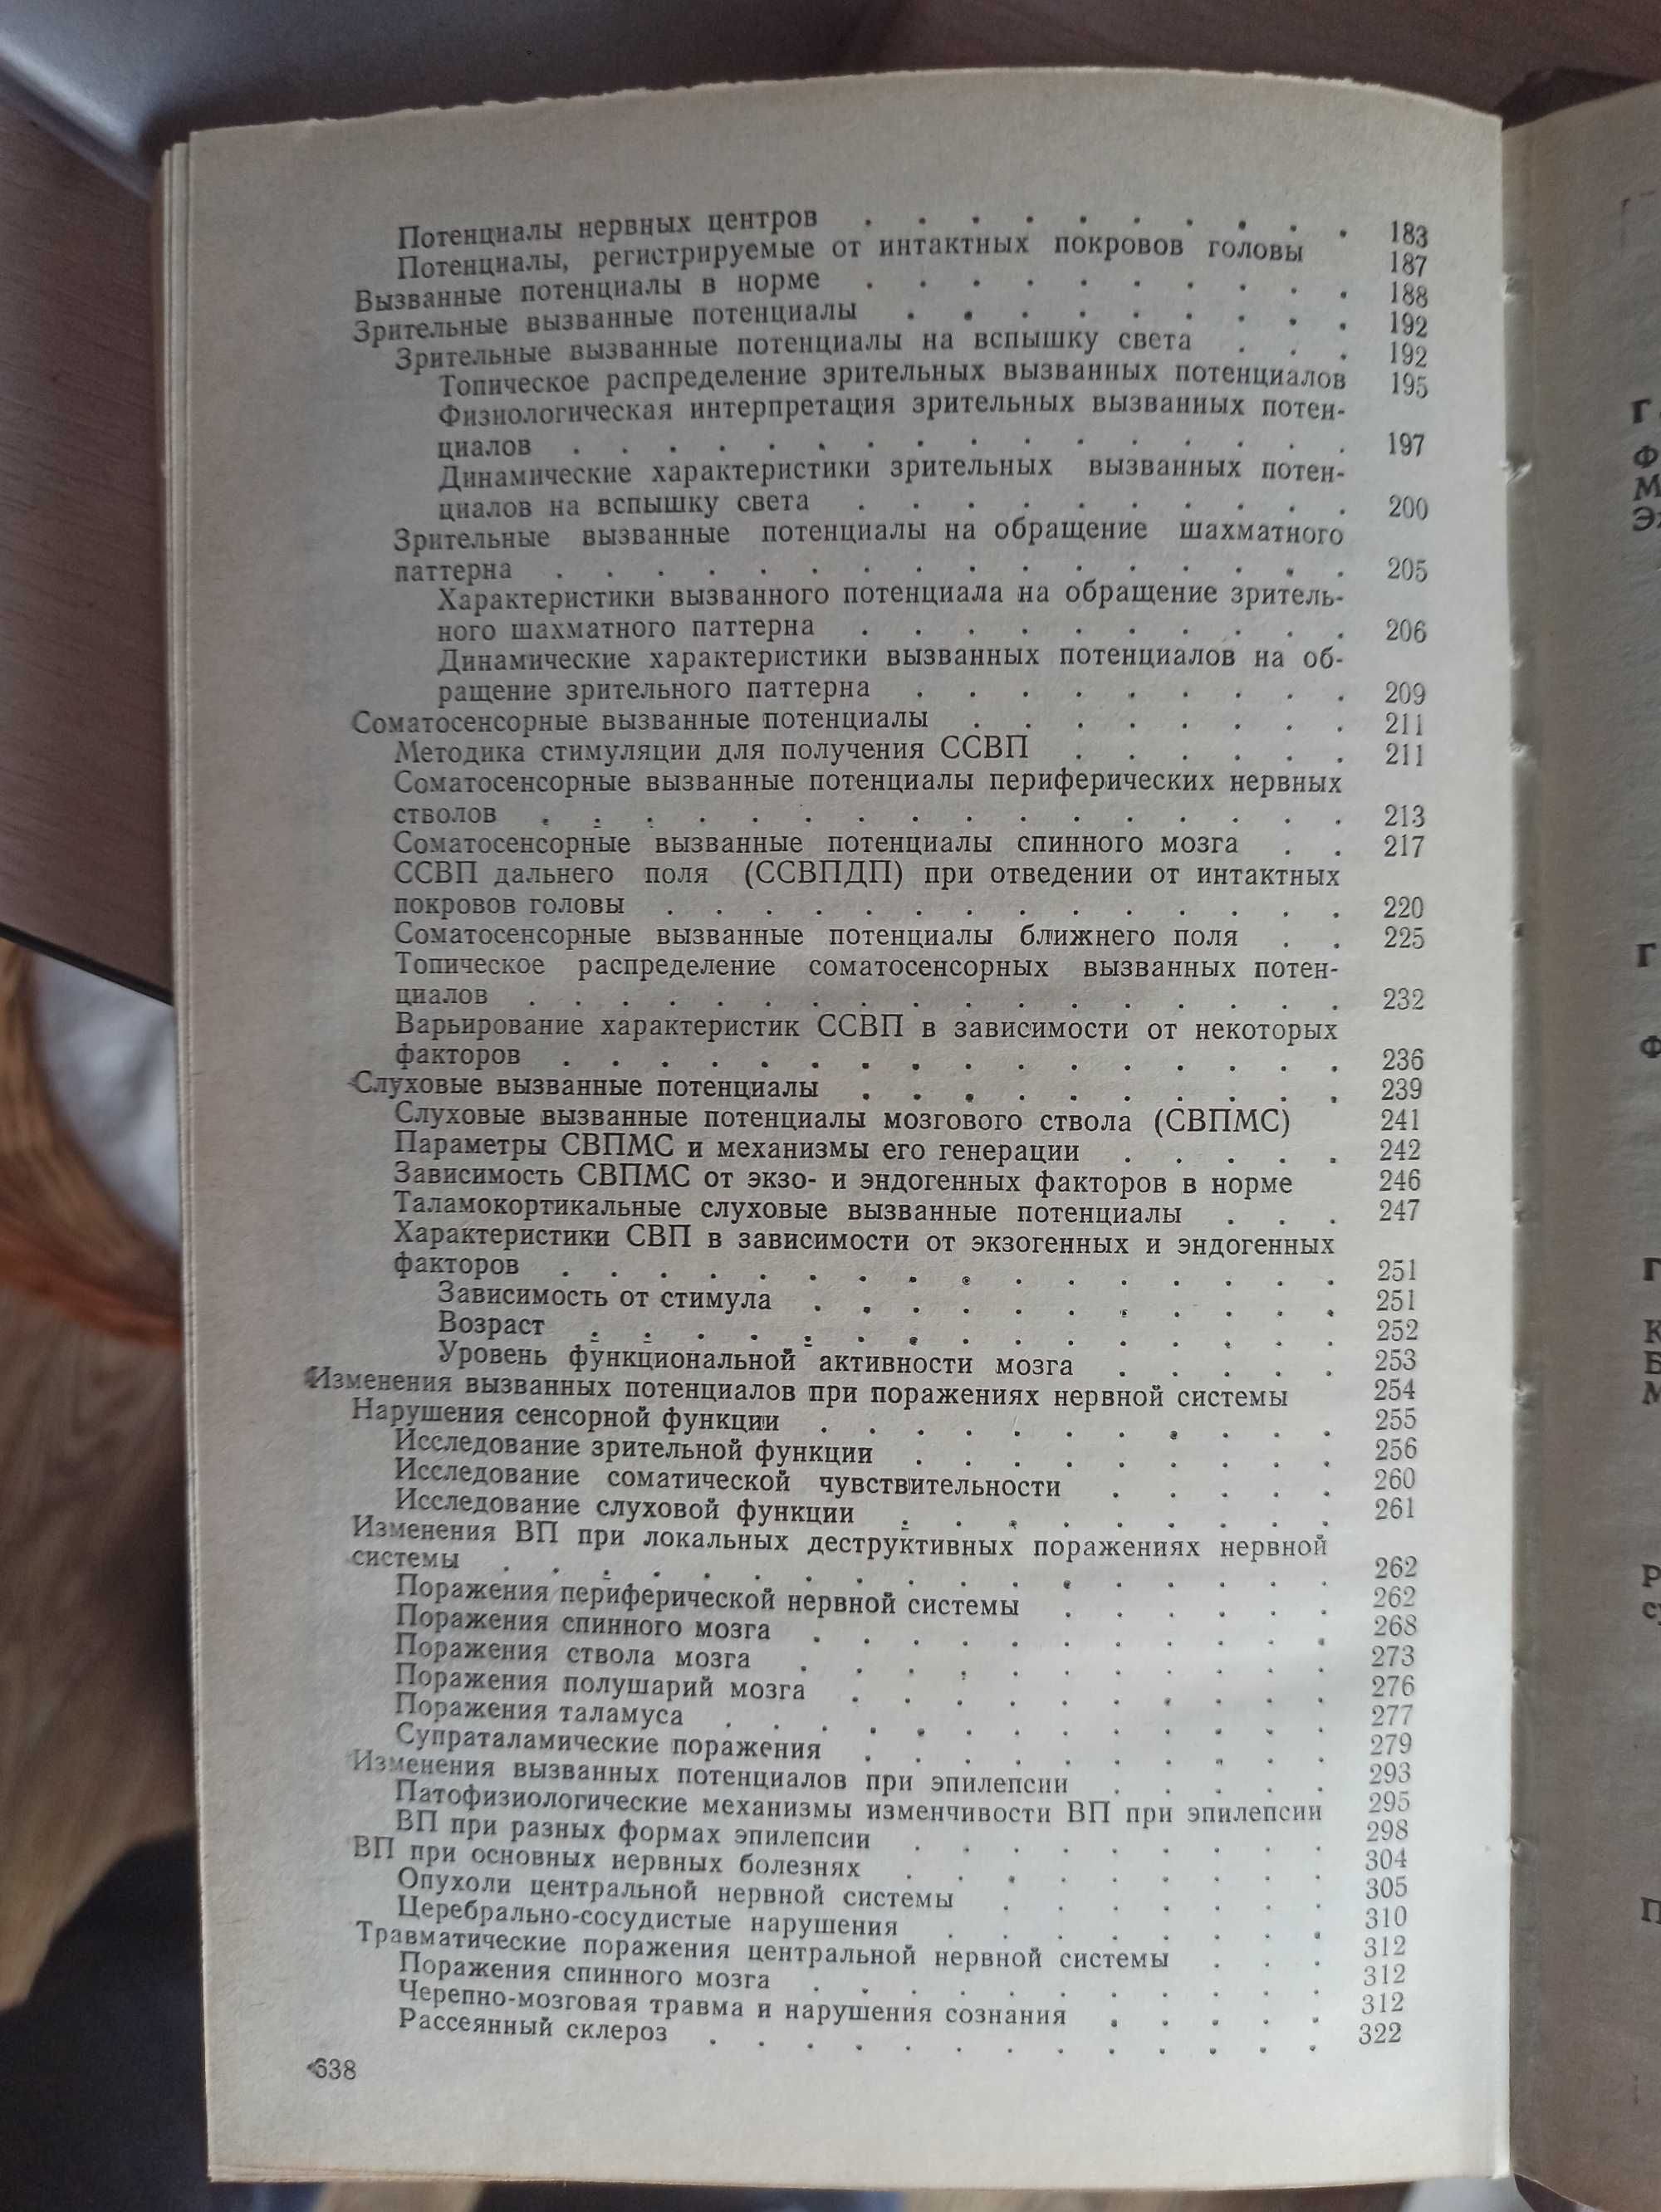 Функциональная диагностика нервных болезней (Зенков, Москва, 1991)